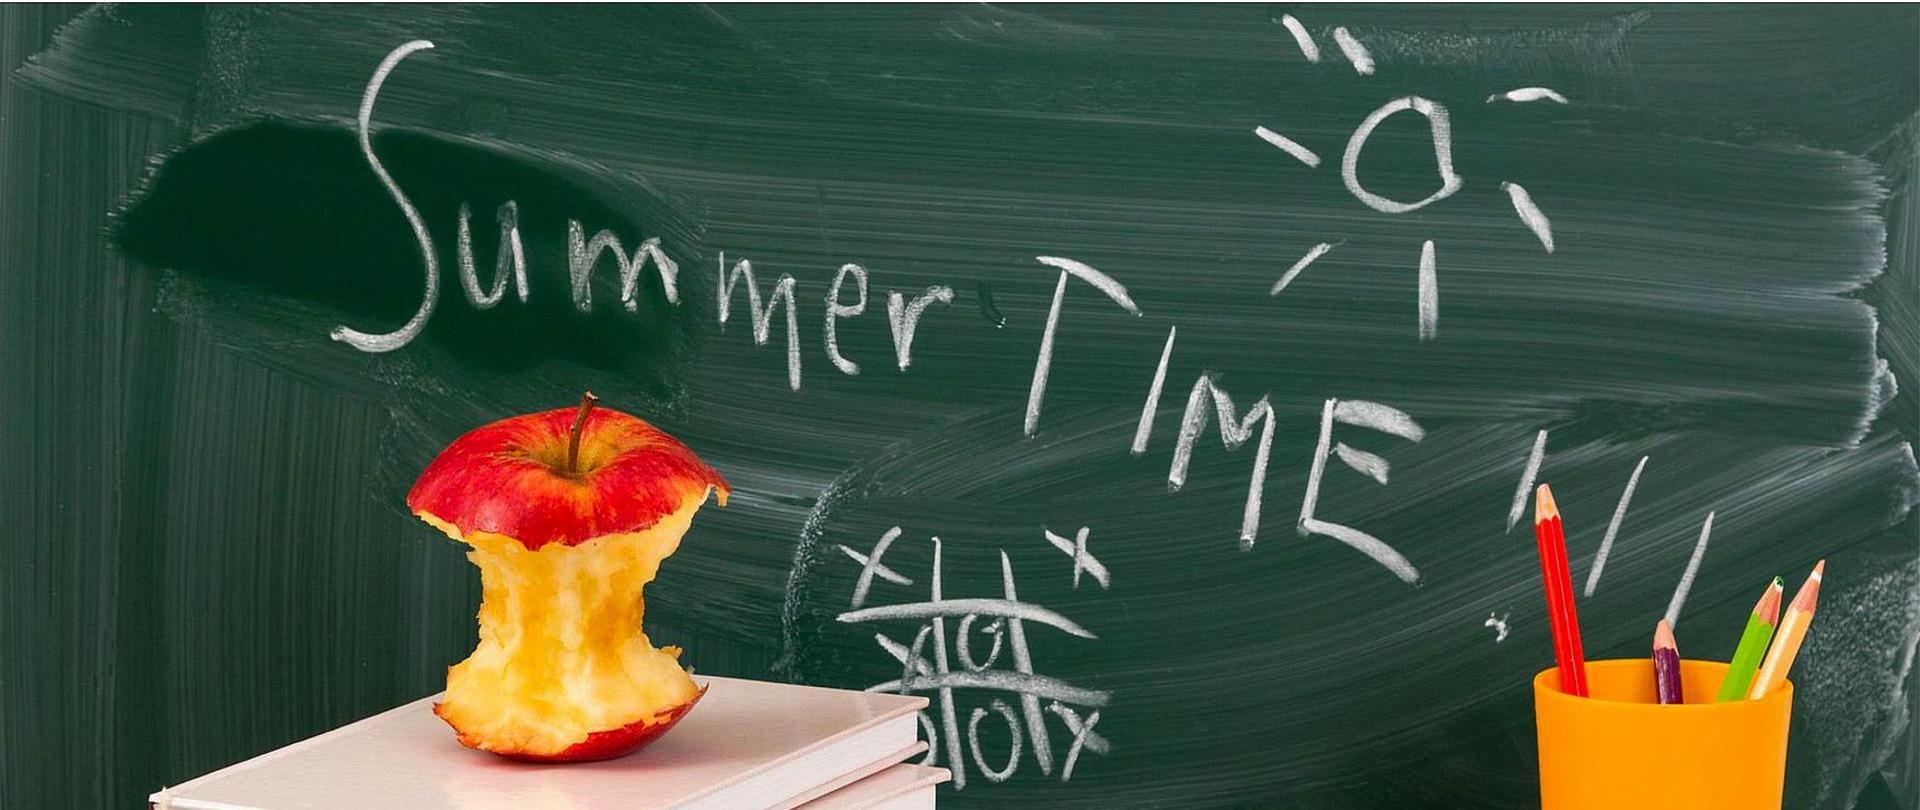 Plakat informujący o uroczystości zakończenia roku szkolnego w dniu 24 czerwca 2022 roku o godzinie 17.00. W centralnej części plakatu umieszczone jest zdjęcie przedstawiające tablicę szkolną z napisem "Summer time". Pod tablicą leżą książki, ogryzek jabłka oraz kubek z kredkami.